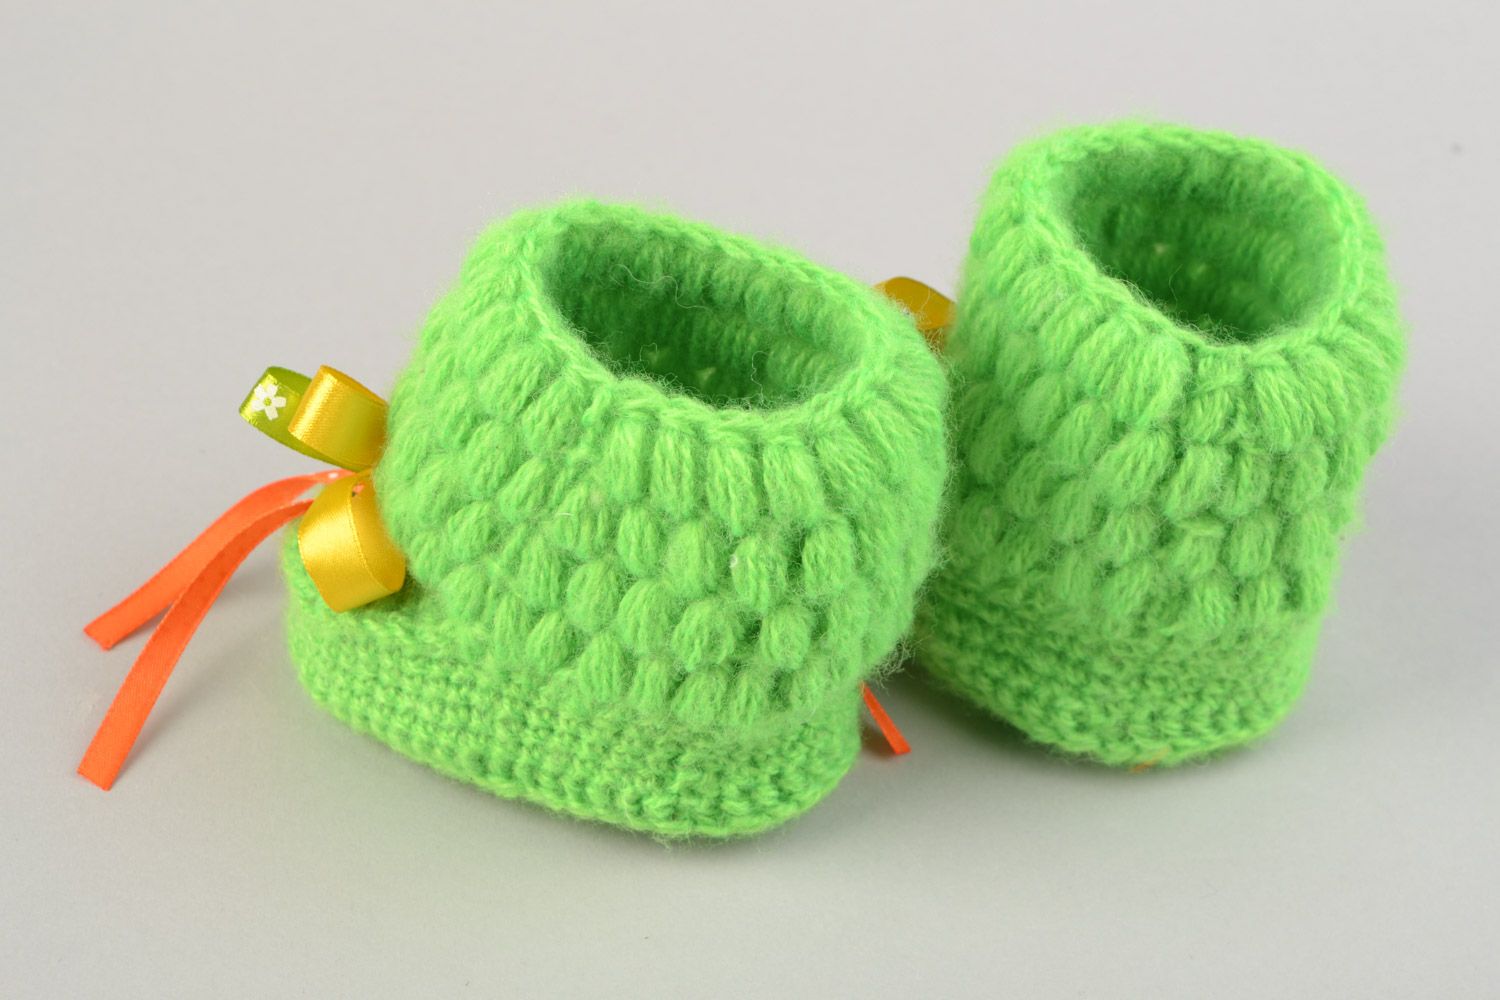 Petits chaussons tricotés pour bébé chauds verts avec noeuds jaunes faits main photo 5